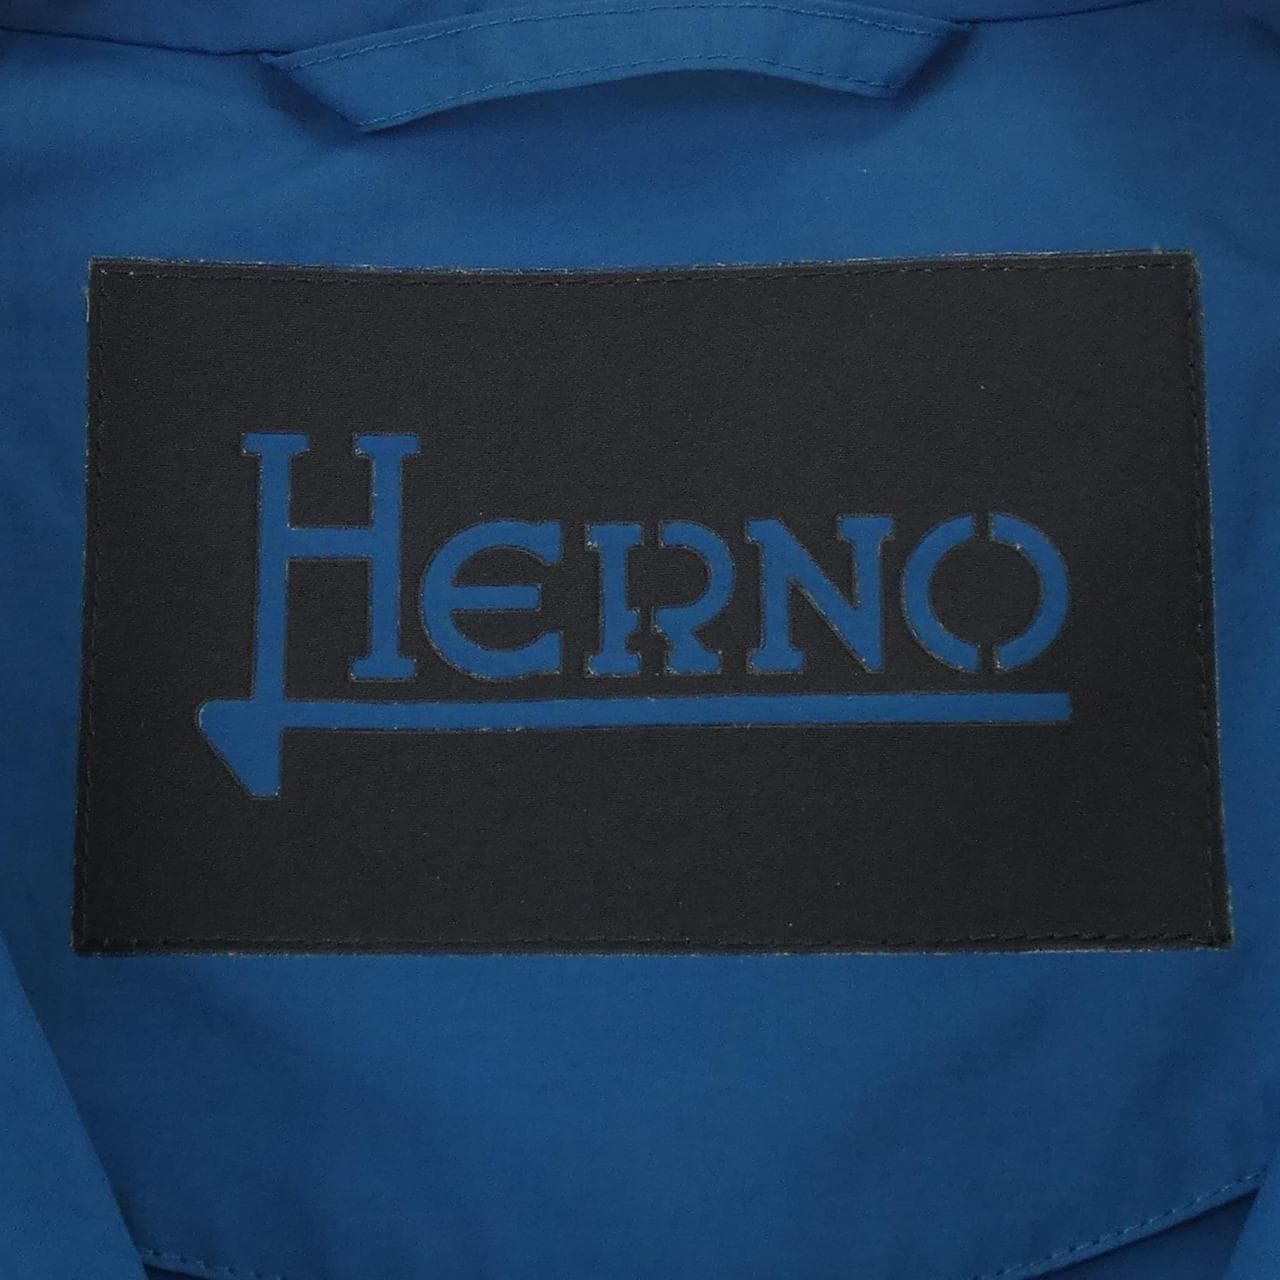 Herno Herno夾克衫